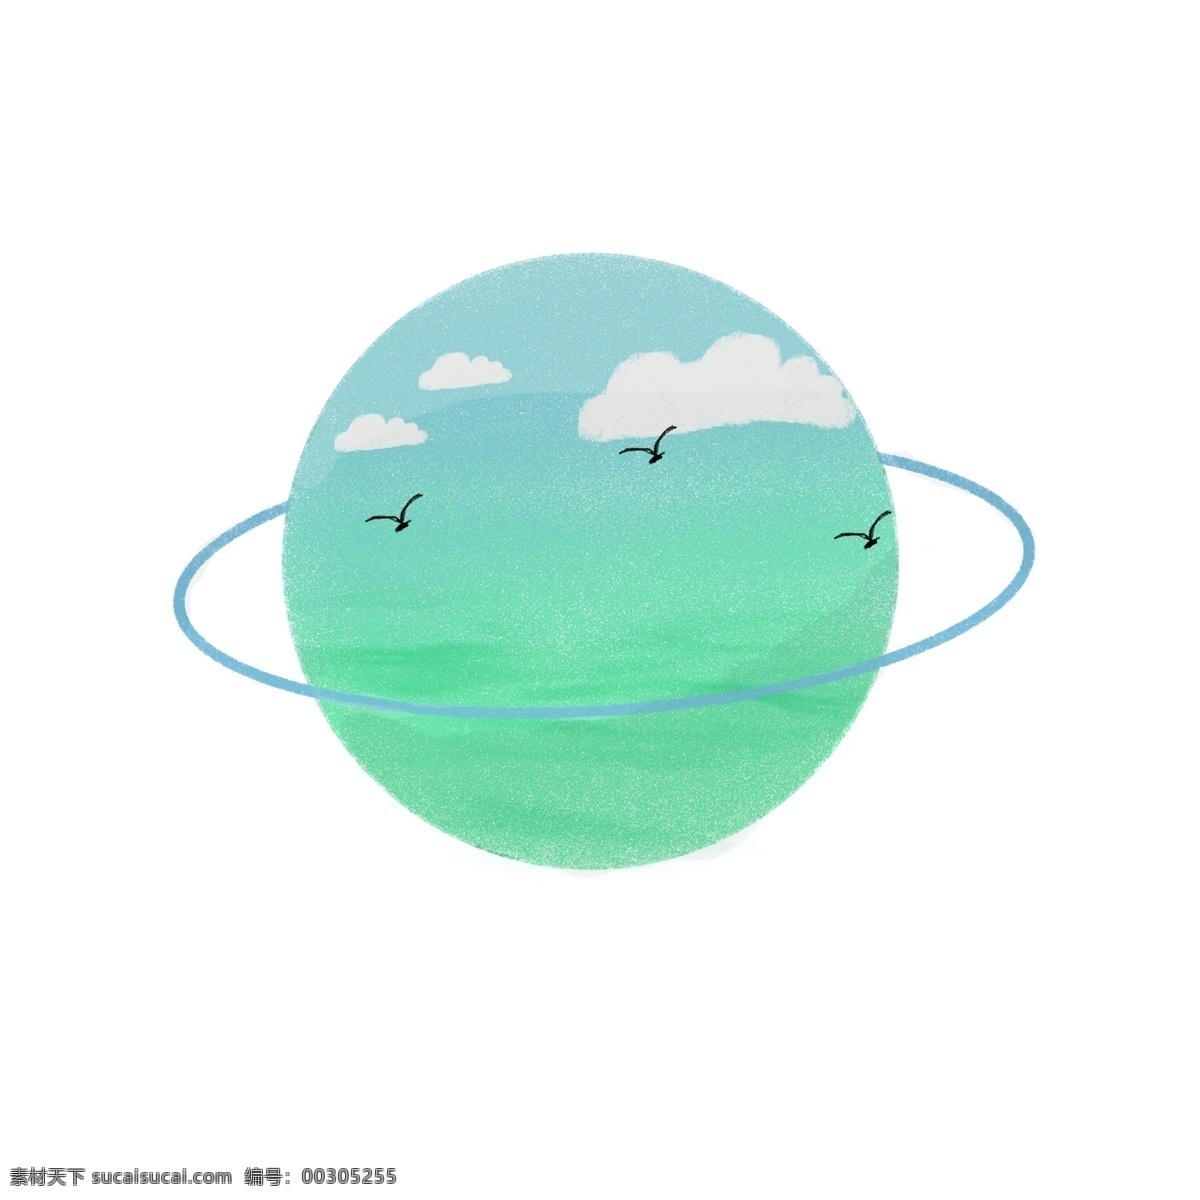 小 清新 蓝天 大海 卡通 扁平 风 星球 地球 元素 扁平风 小清新 白云 大雁 蓝色 绿色 海洋 水波纹 波浪